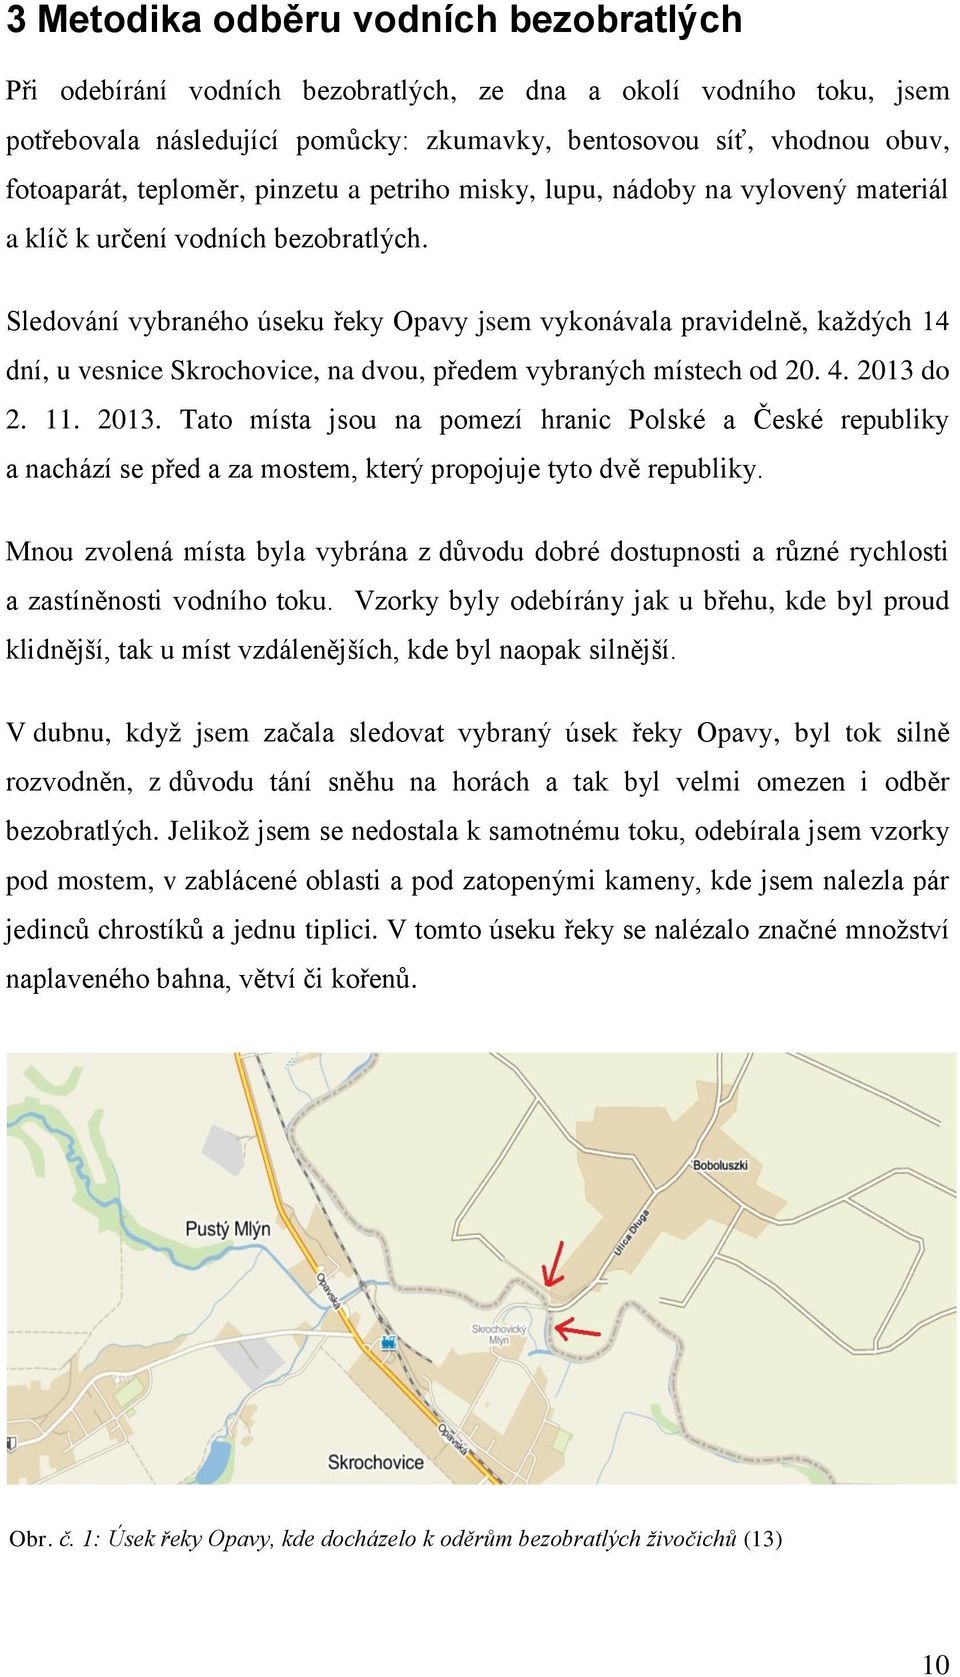 Sledování vybraného úseku řeky Opavy jsem vykonávala pravidelně, každých 14 dní, u vesnice Skrochovice, na dvou, předem vybraných místech od 20. 4. 2013 